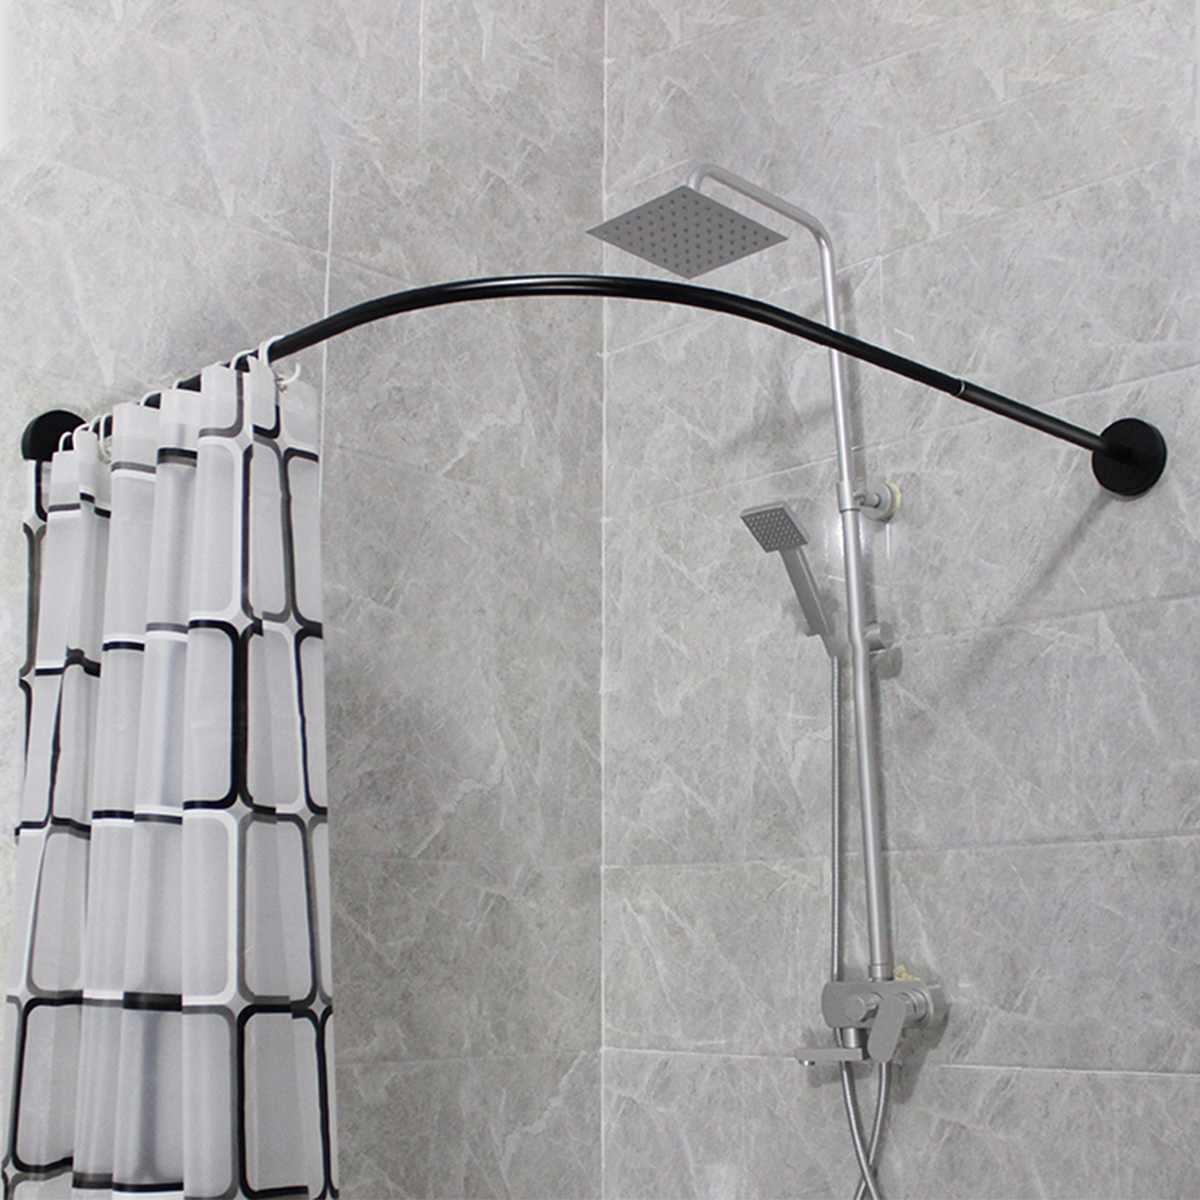 пластиковый карниз для штор в ванную